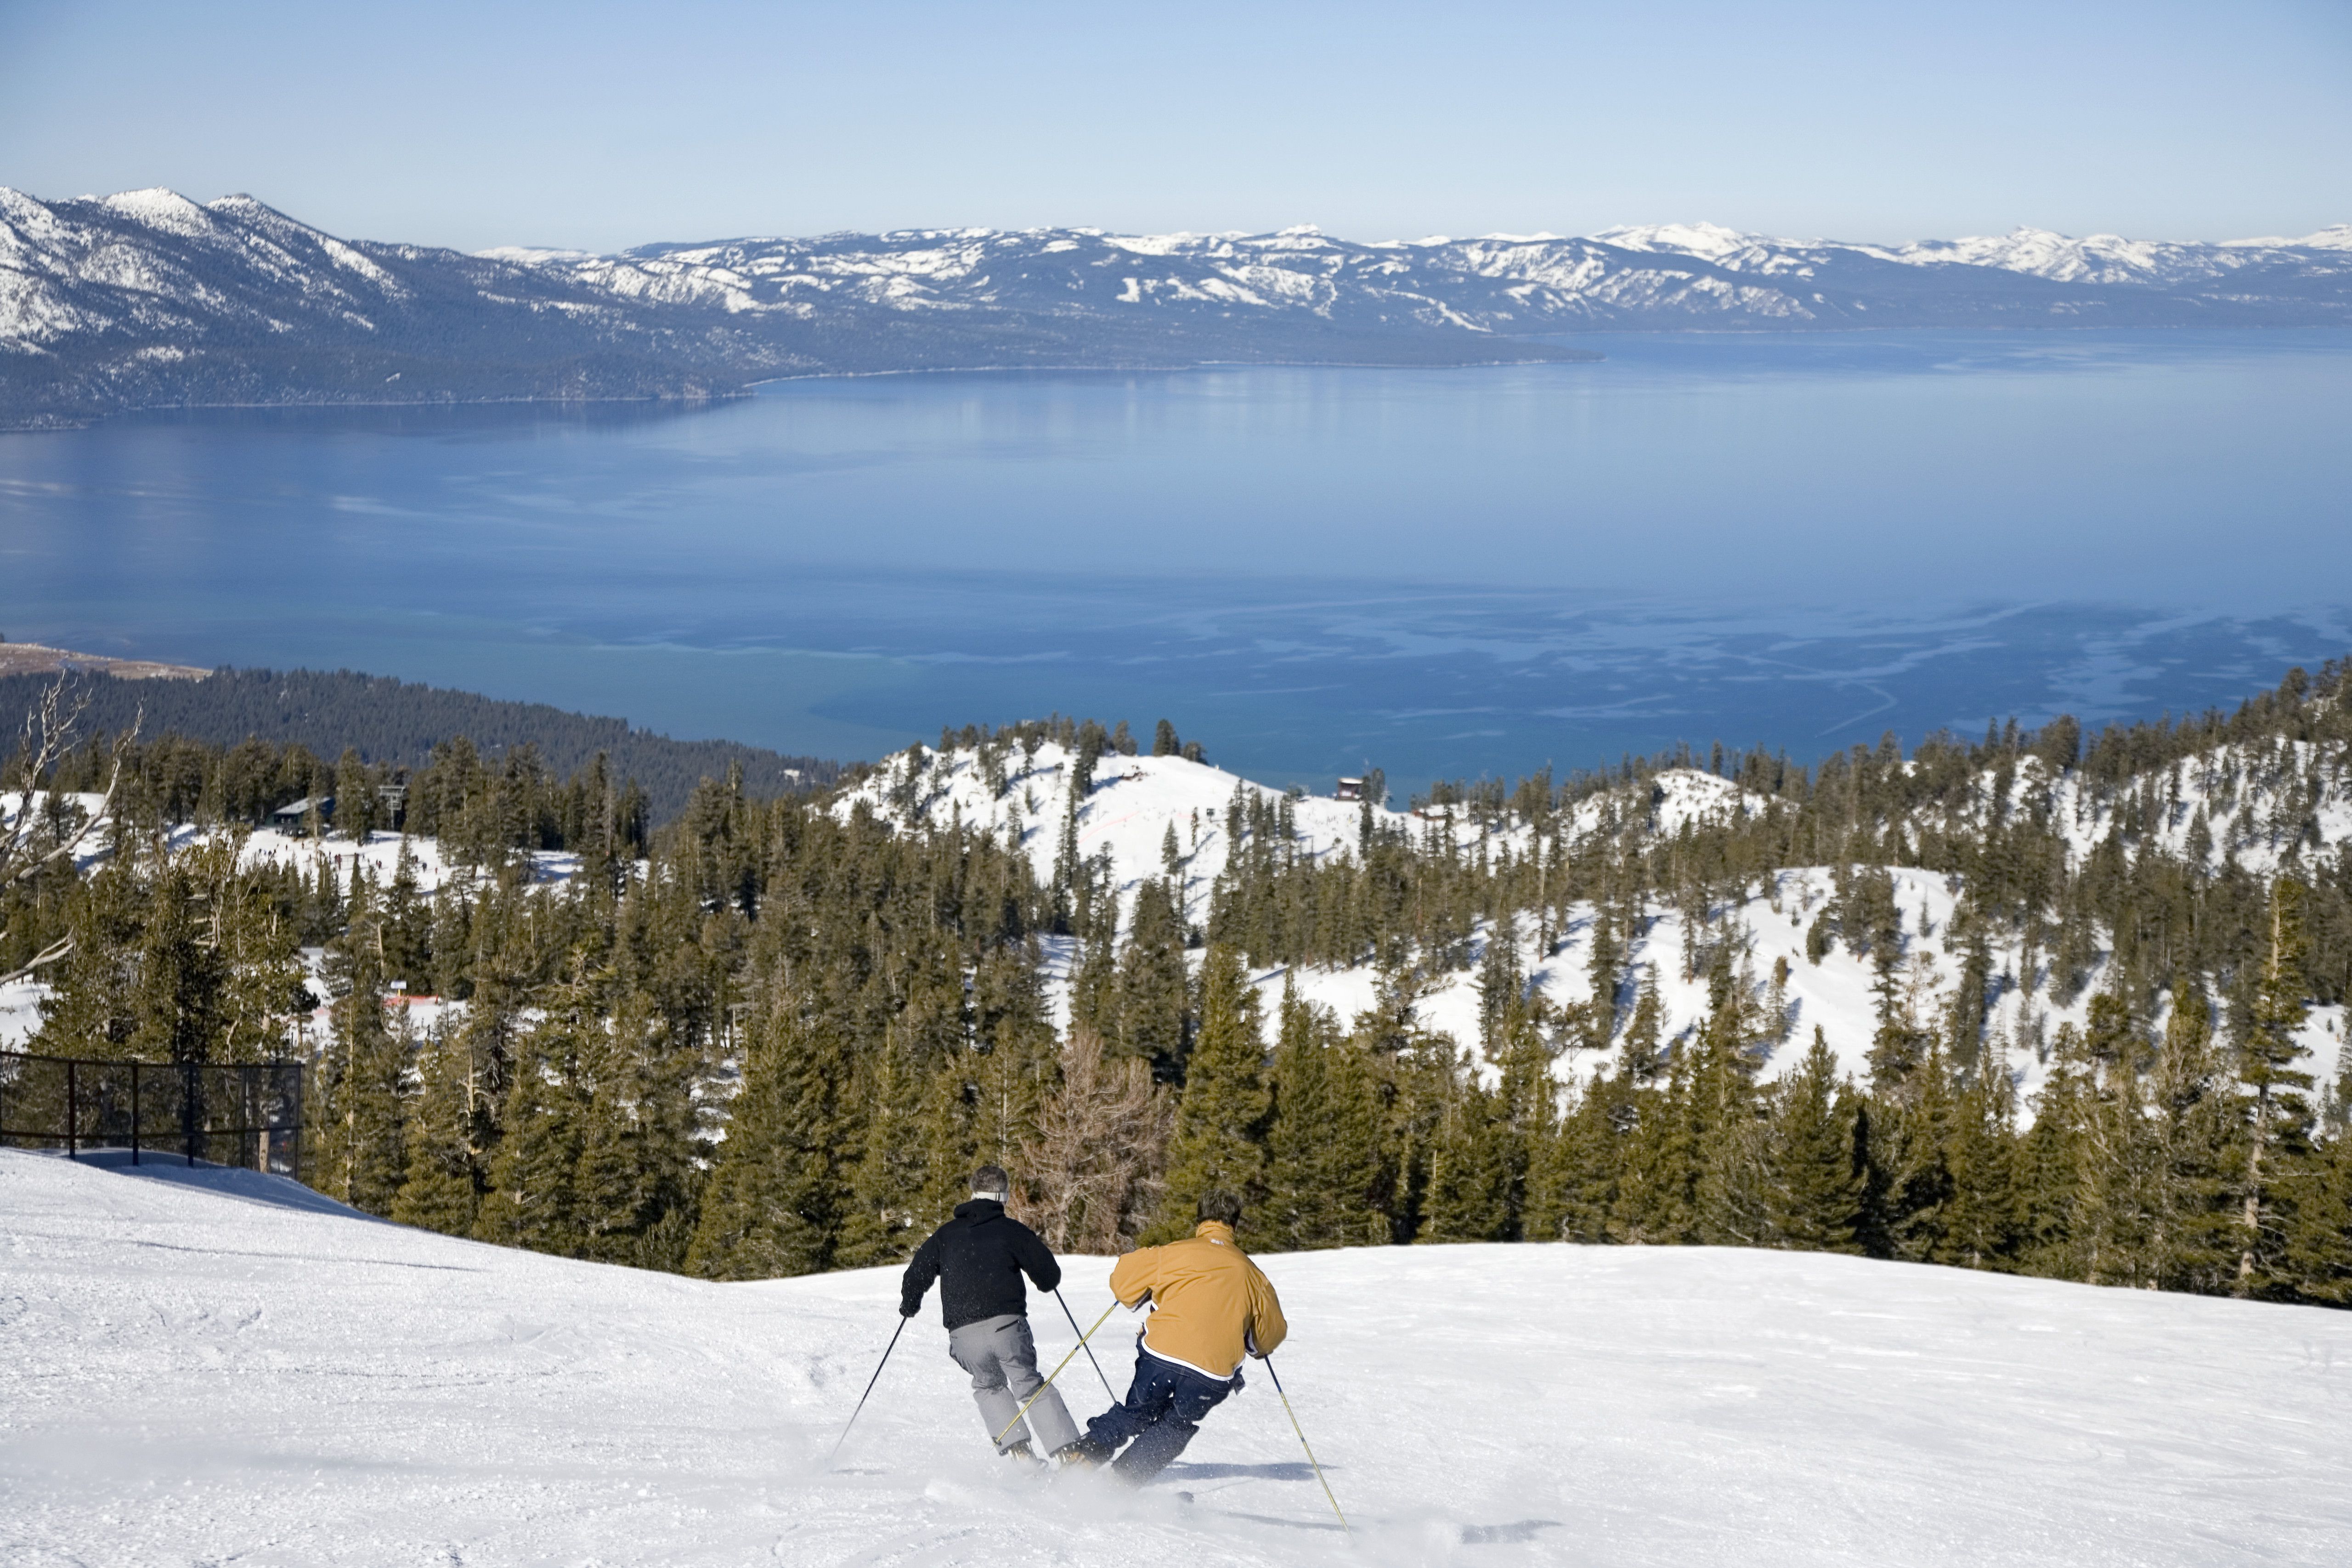 Lake tahoe ski resorts and gambling casinos